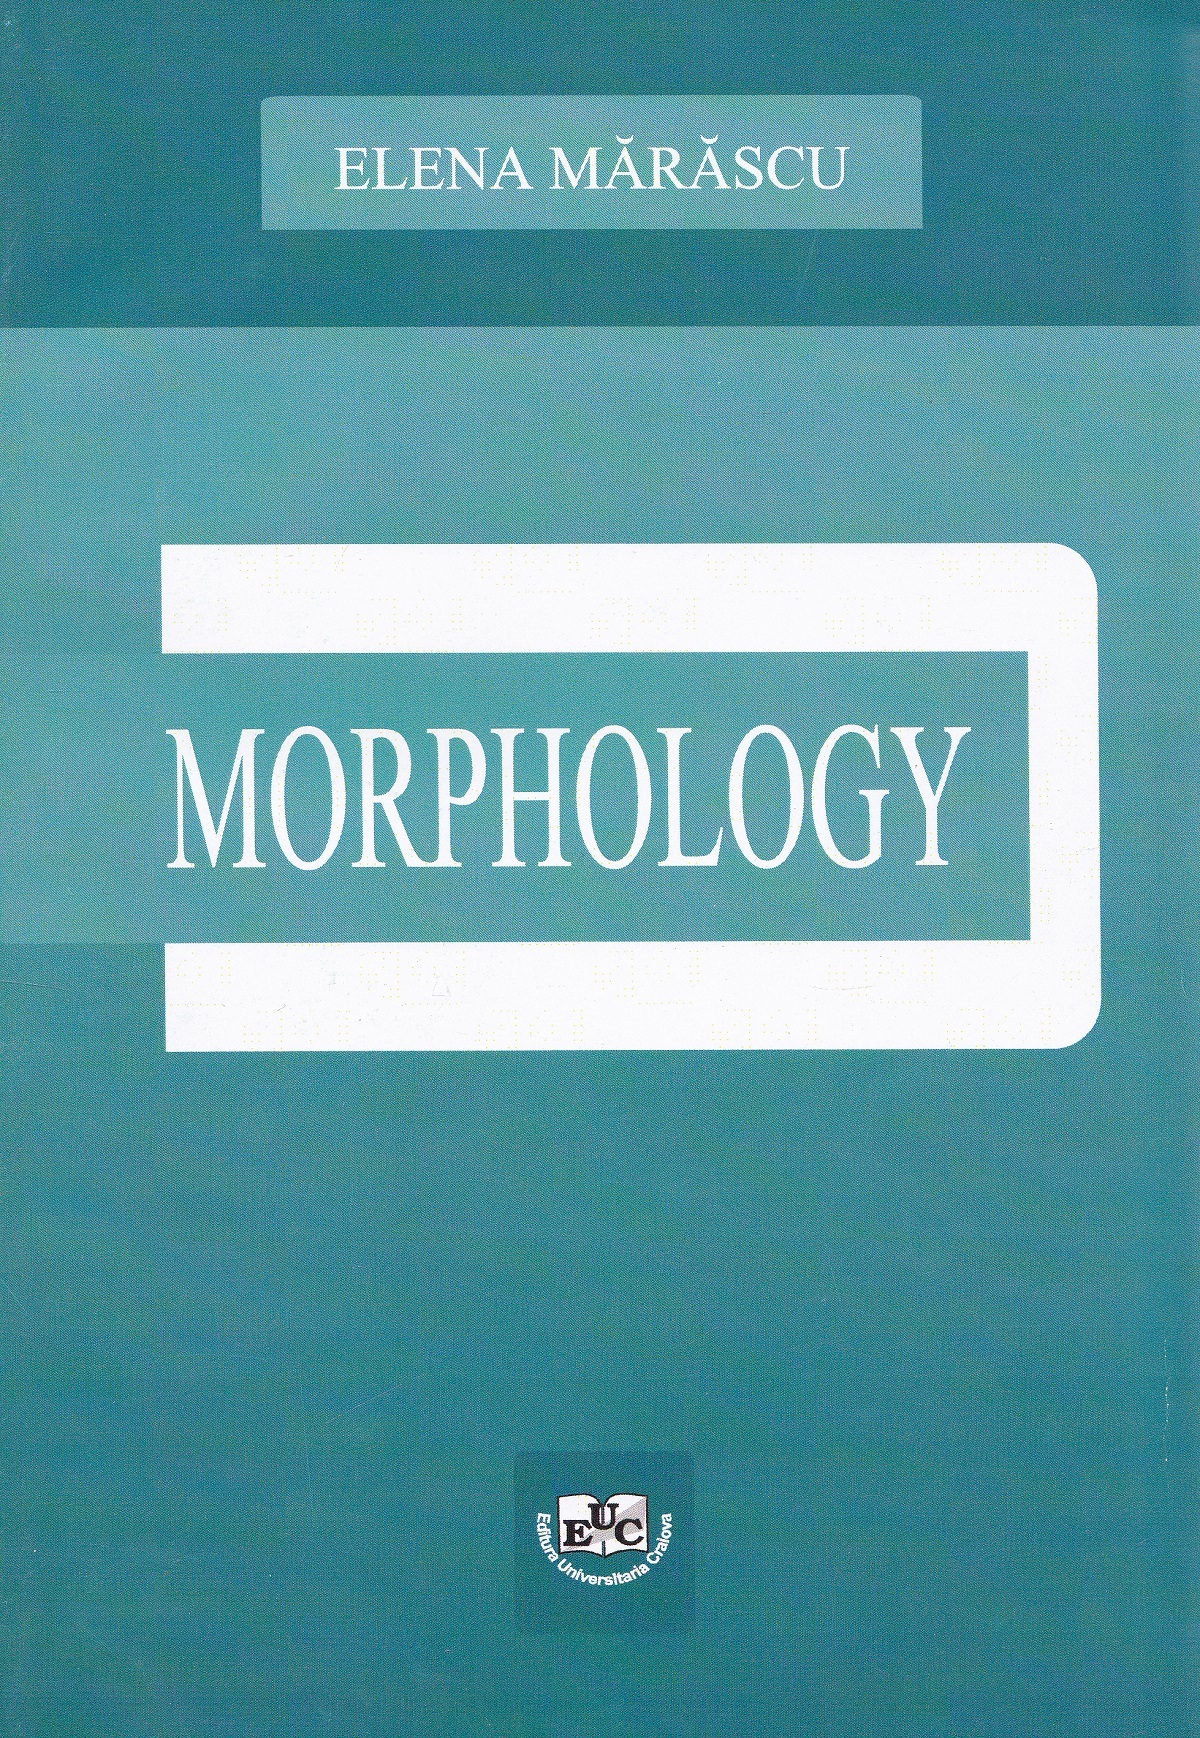 Morphology - Elena Marascu